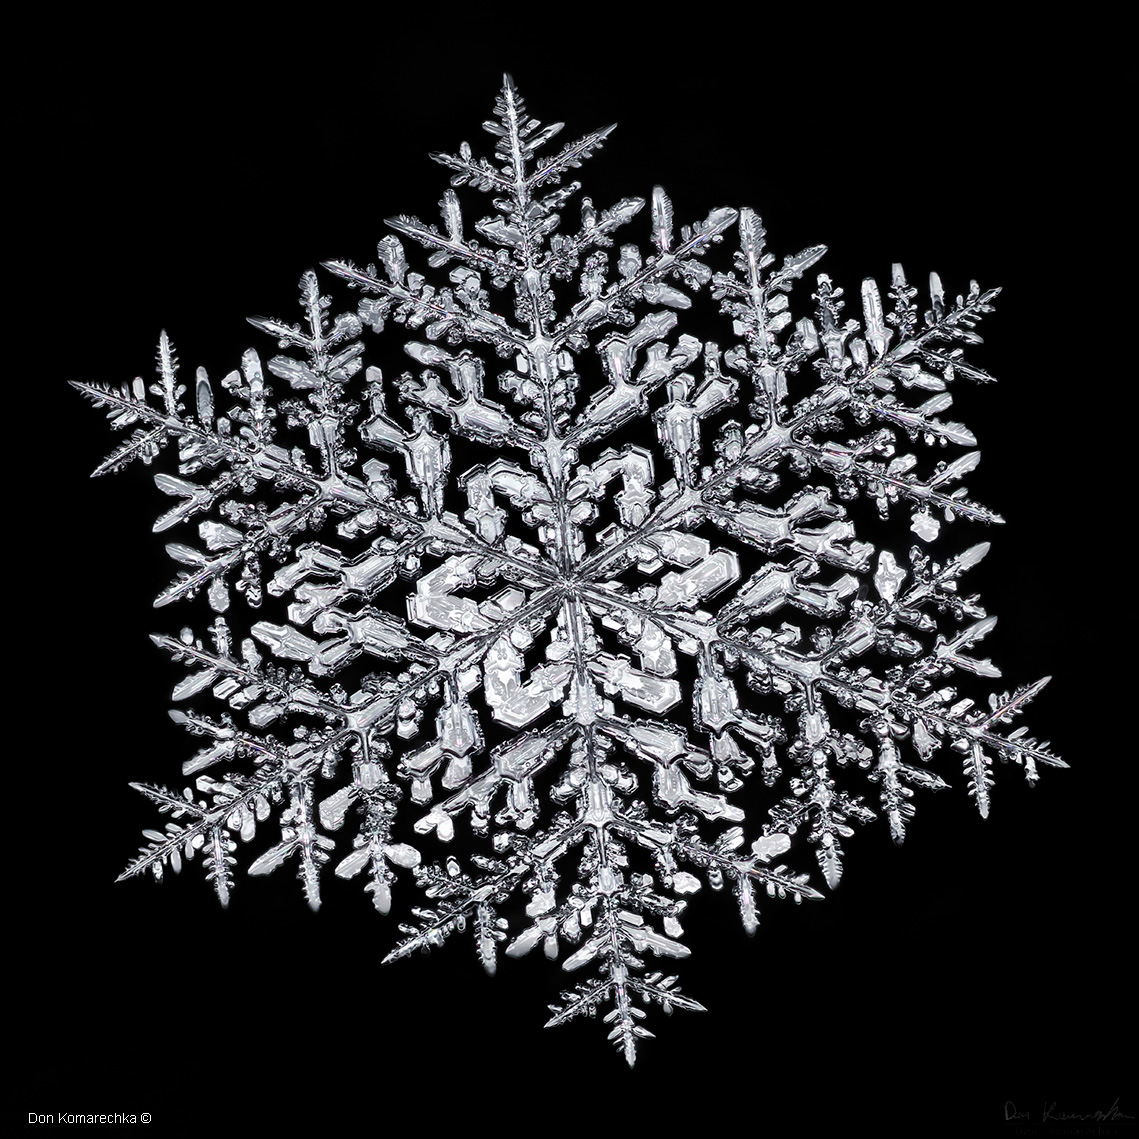 Snow crystal Don Komarechka ©